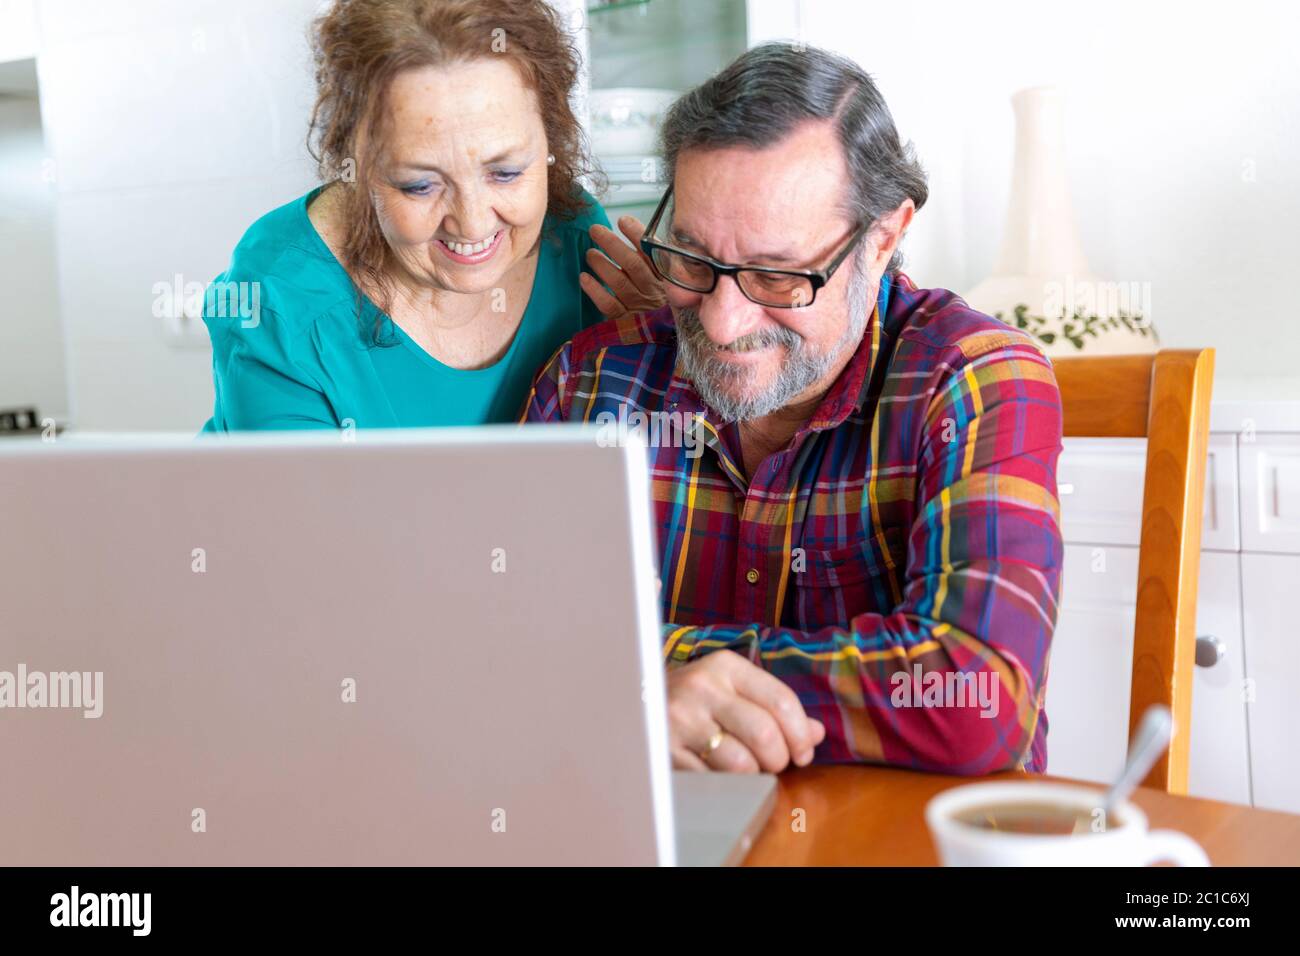 Un couple plus âgé souriant à la maison devant l'écran de son ordinateur portable. Restez à la maison et nouveau concept de communication. Banque D'Images